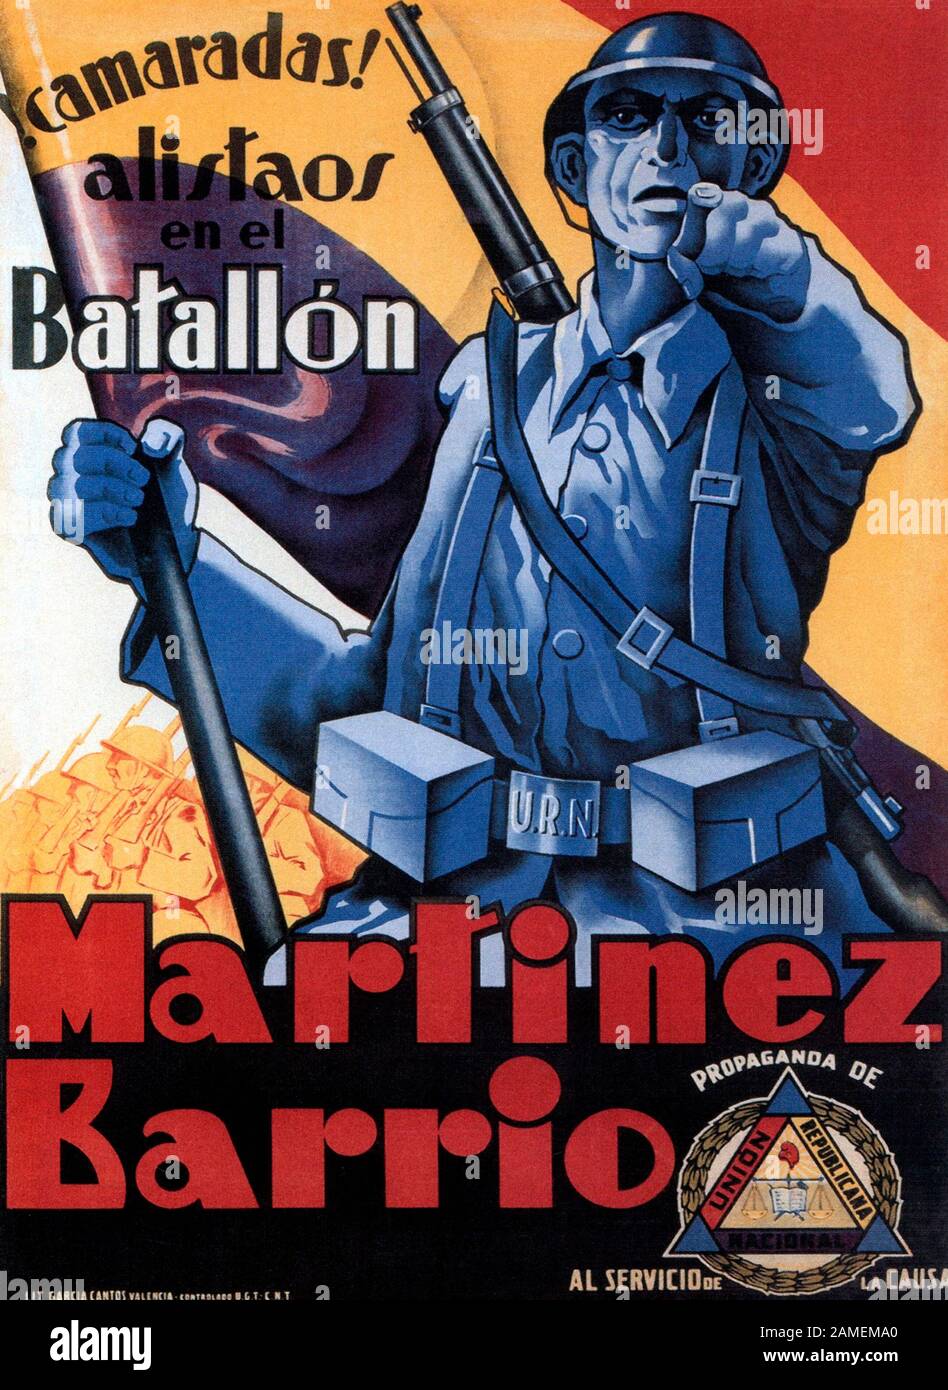 Affiche de propagande républicaine espagnole: Liste de camarades dans le bataillon de Marinez Barrio. 1937 Banque D'Images